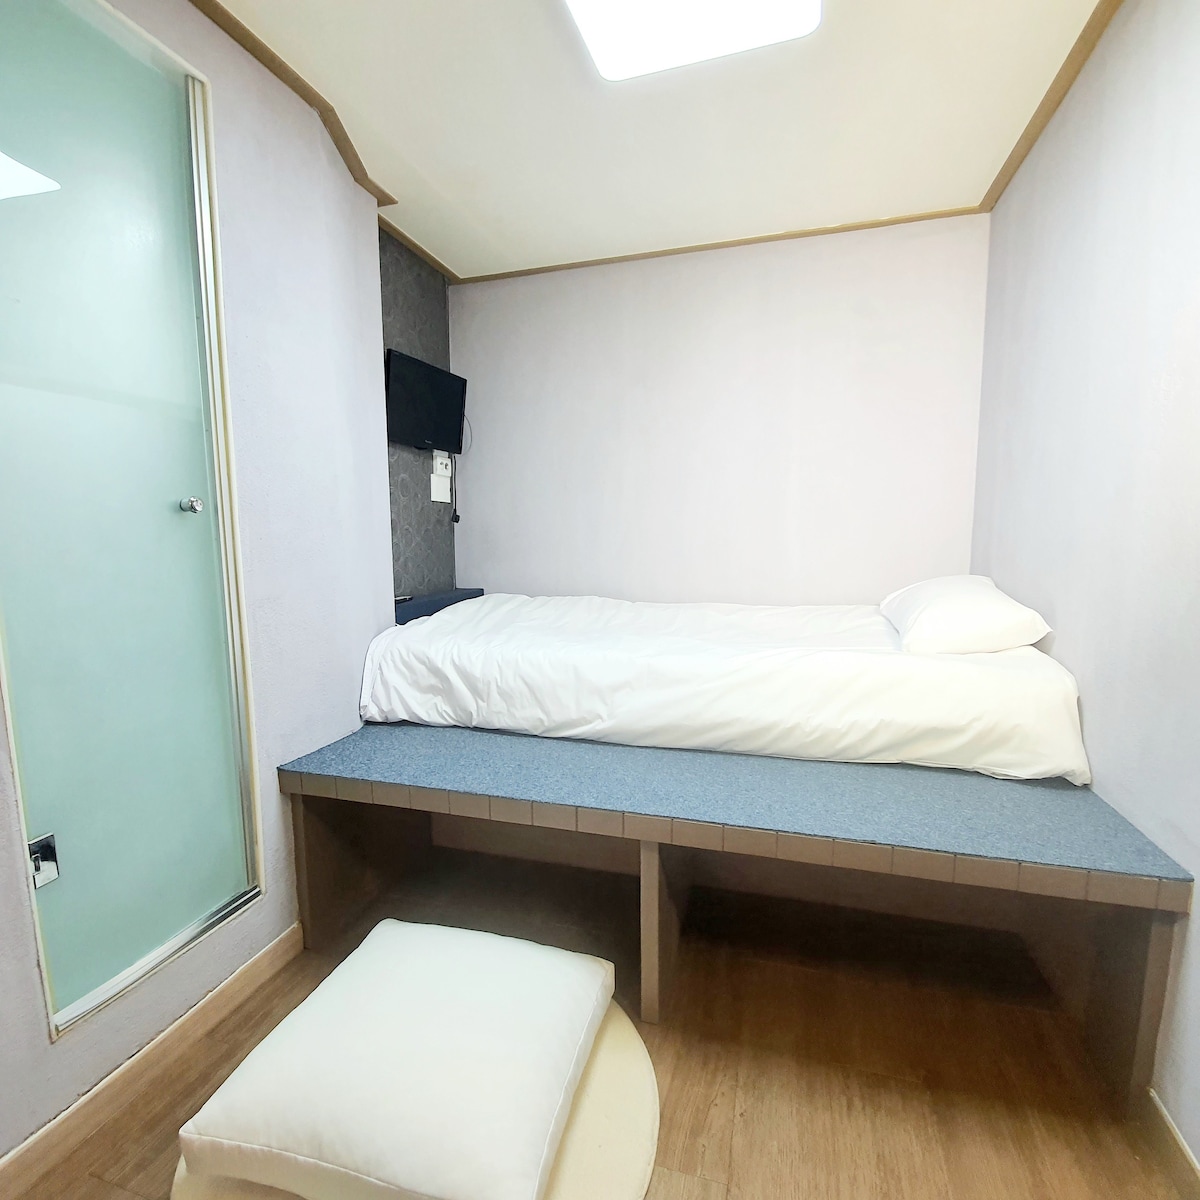 동대문 바오305 : 개인욕실&개인침실